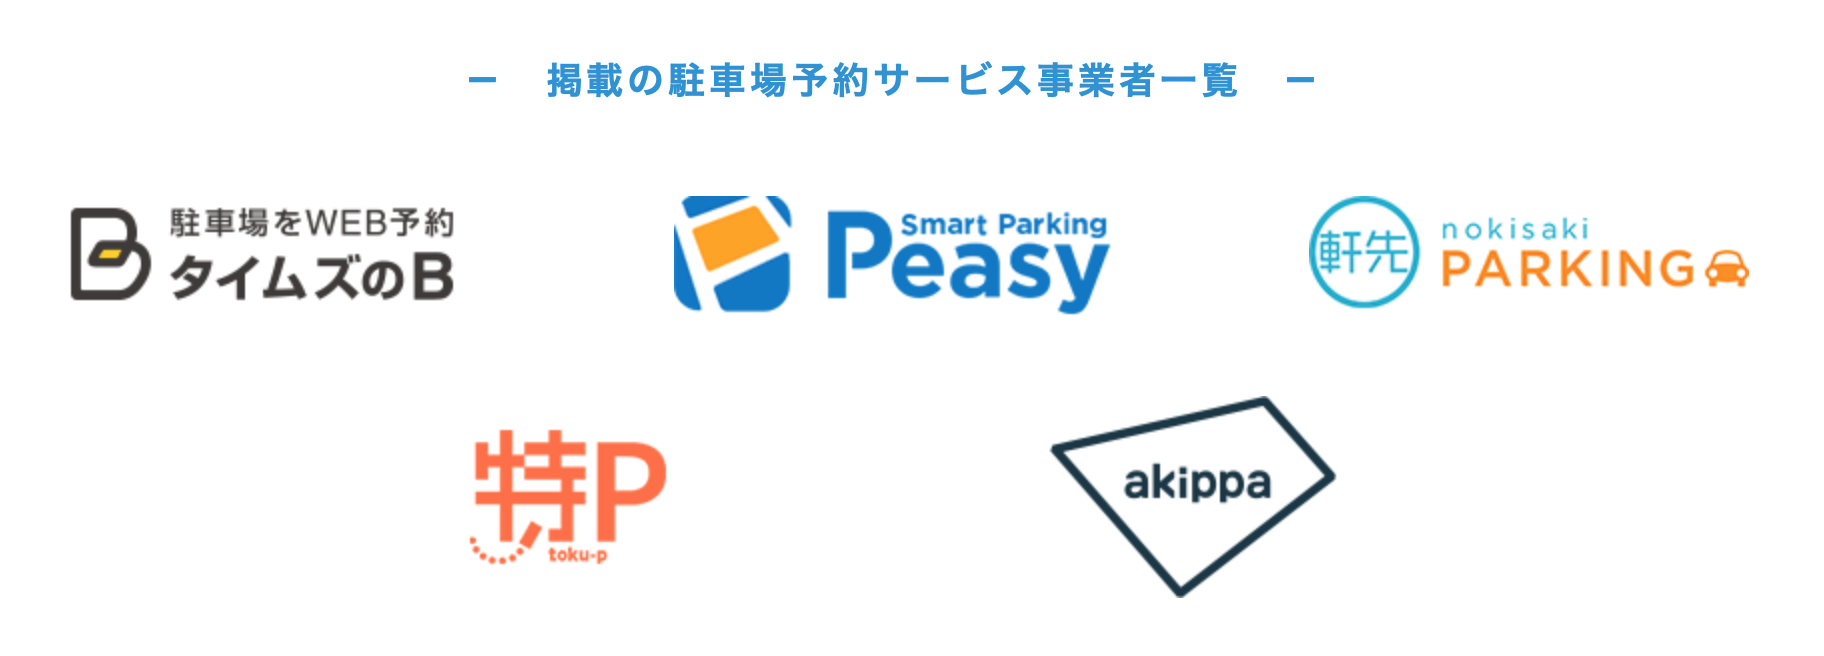 駐車場予約サービスとは 徹底比較 東京 大阪 名古屋等で便利で安いのはここ 駐車場の神様